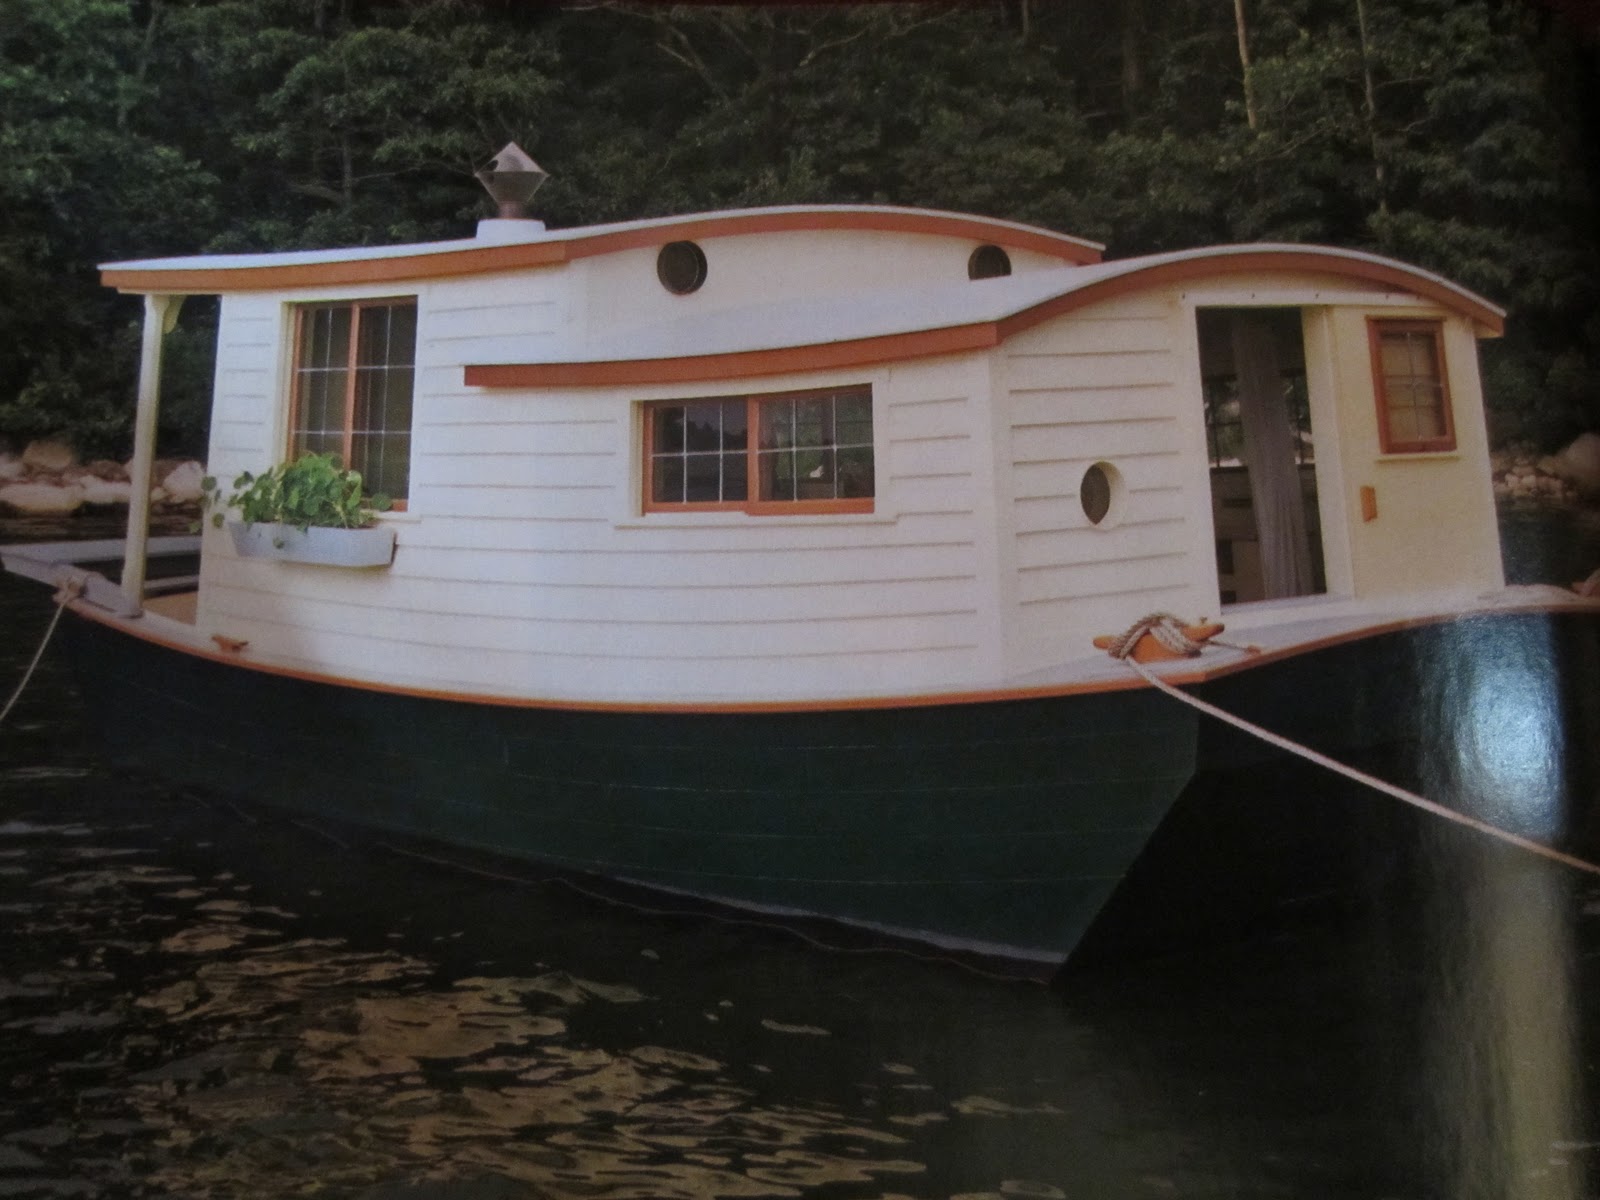 an unbelievable shantyboat/houseboat in wooden boat